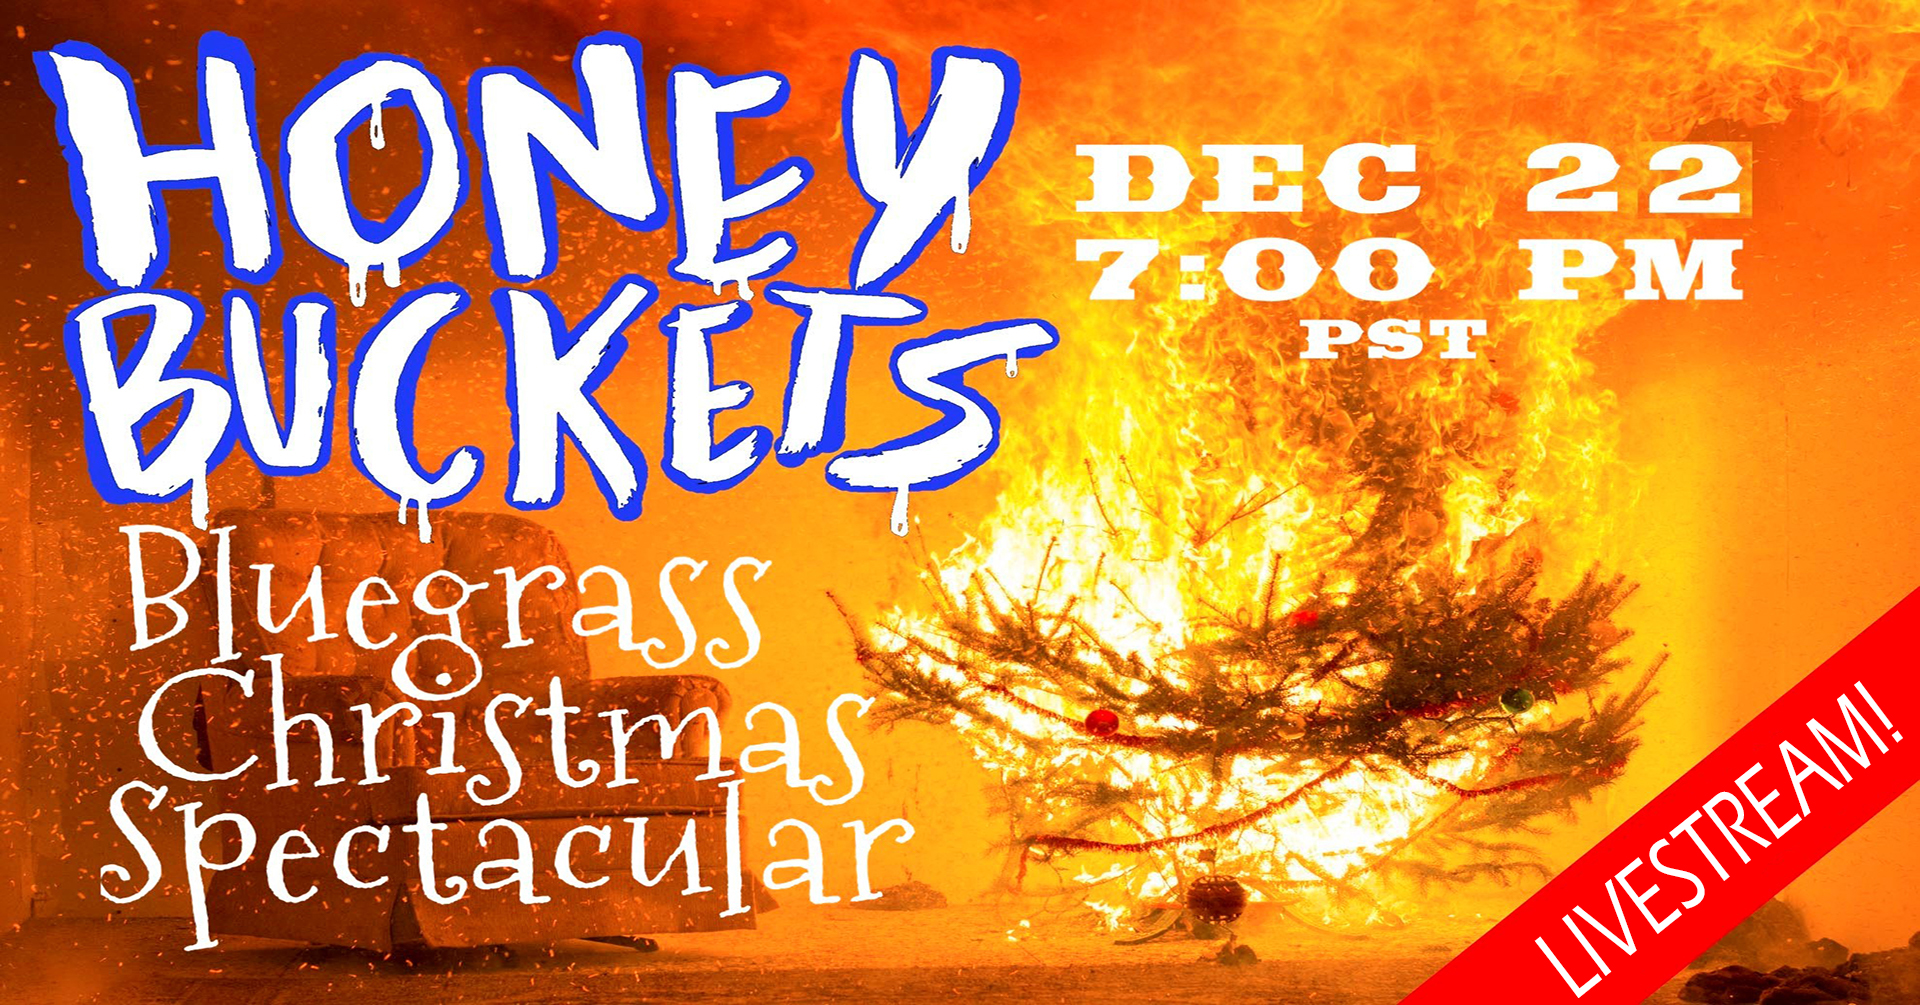 Honey Buckets Bluegrass Christmas Spectacular